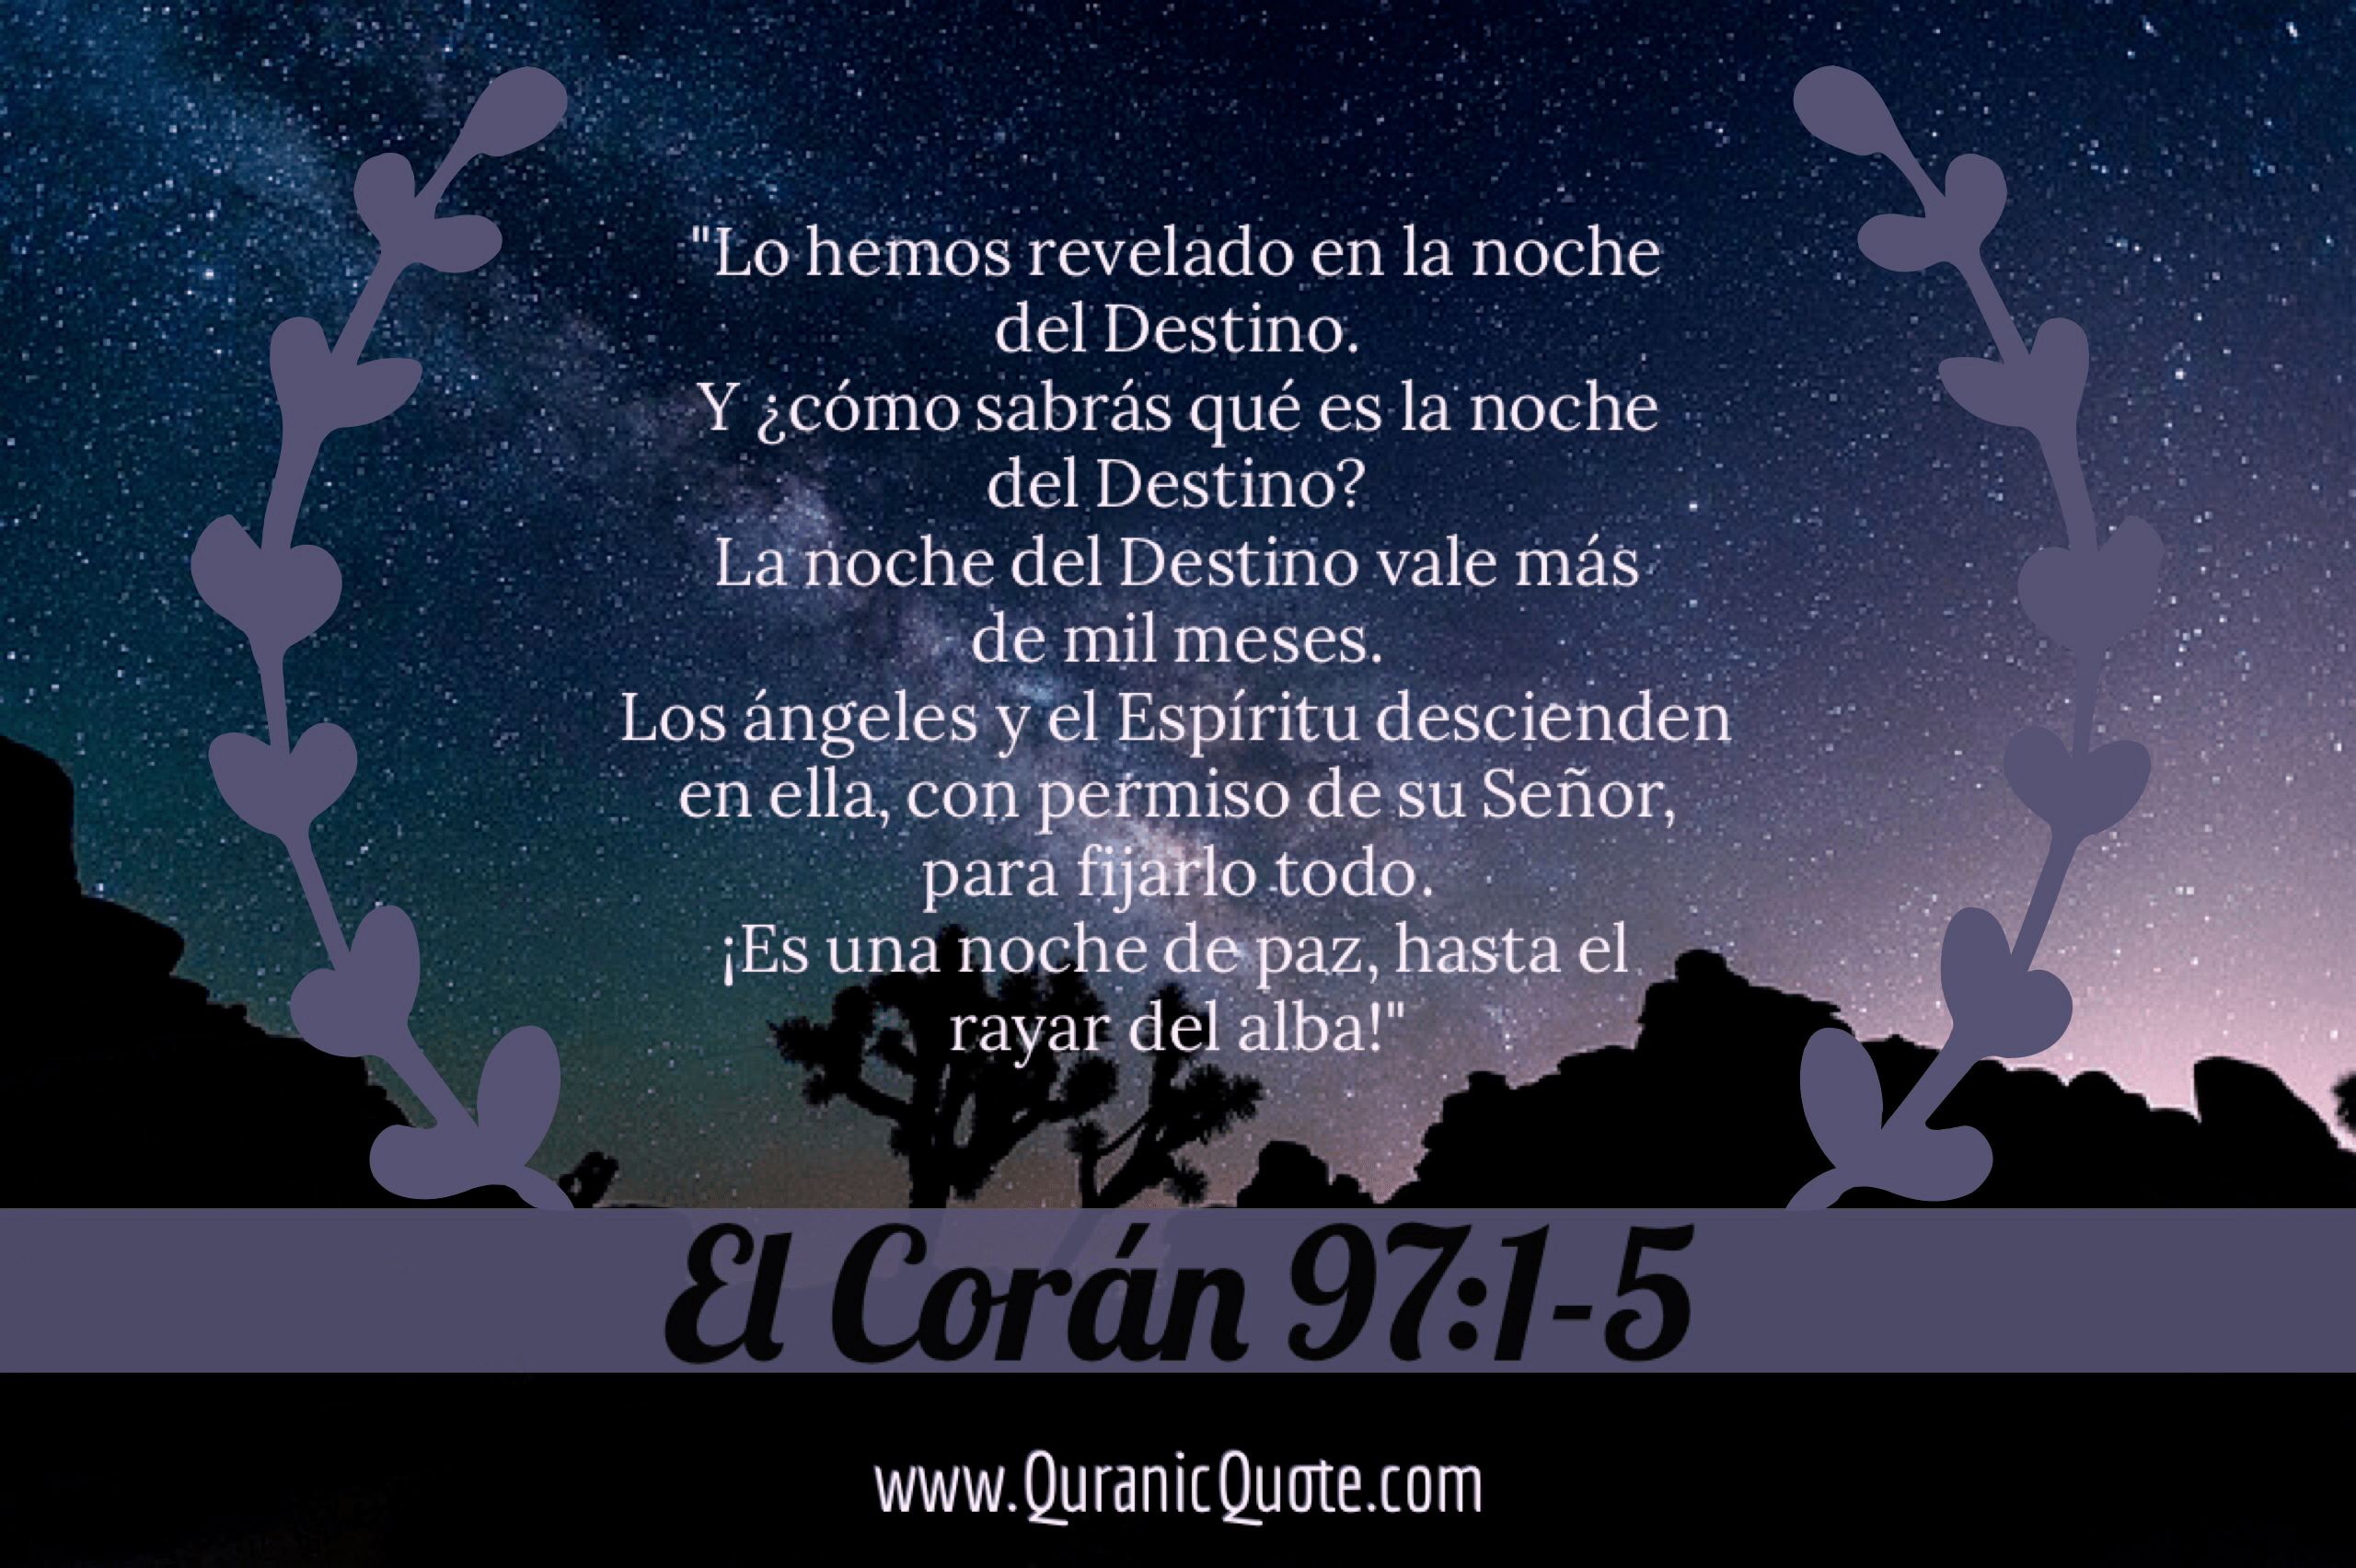 Quranic Quotes Español #125